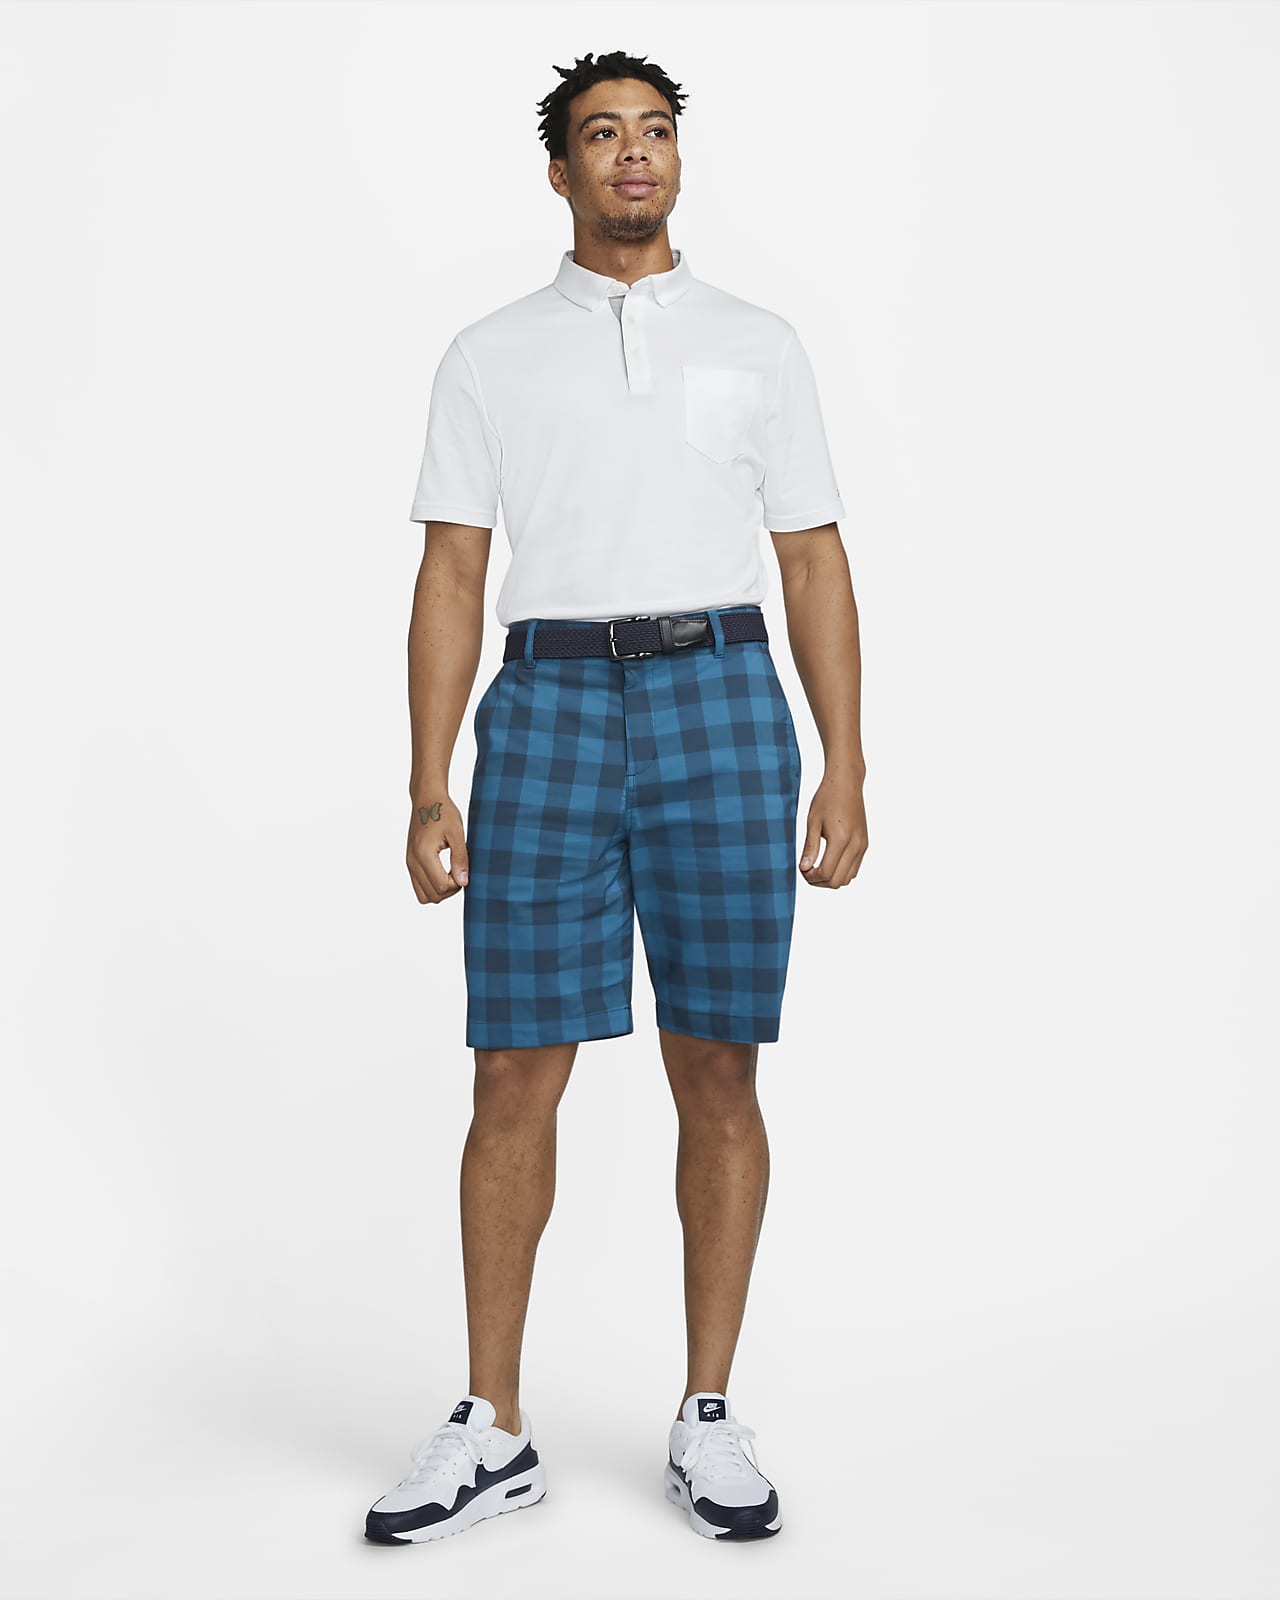 Nike Dri-FIT UV Men's Plaid Golf Chino Shorts | ubicaciondepersonas ...